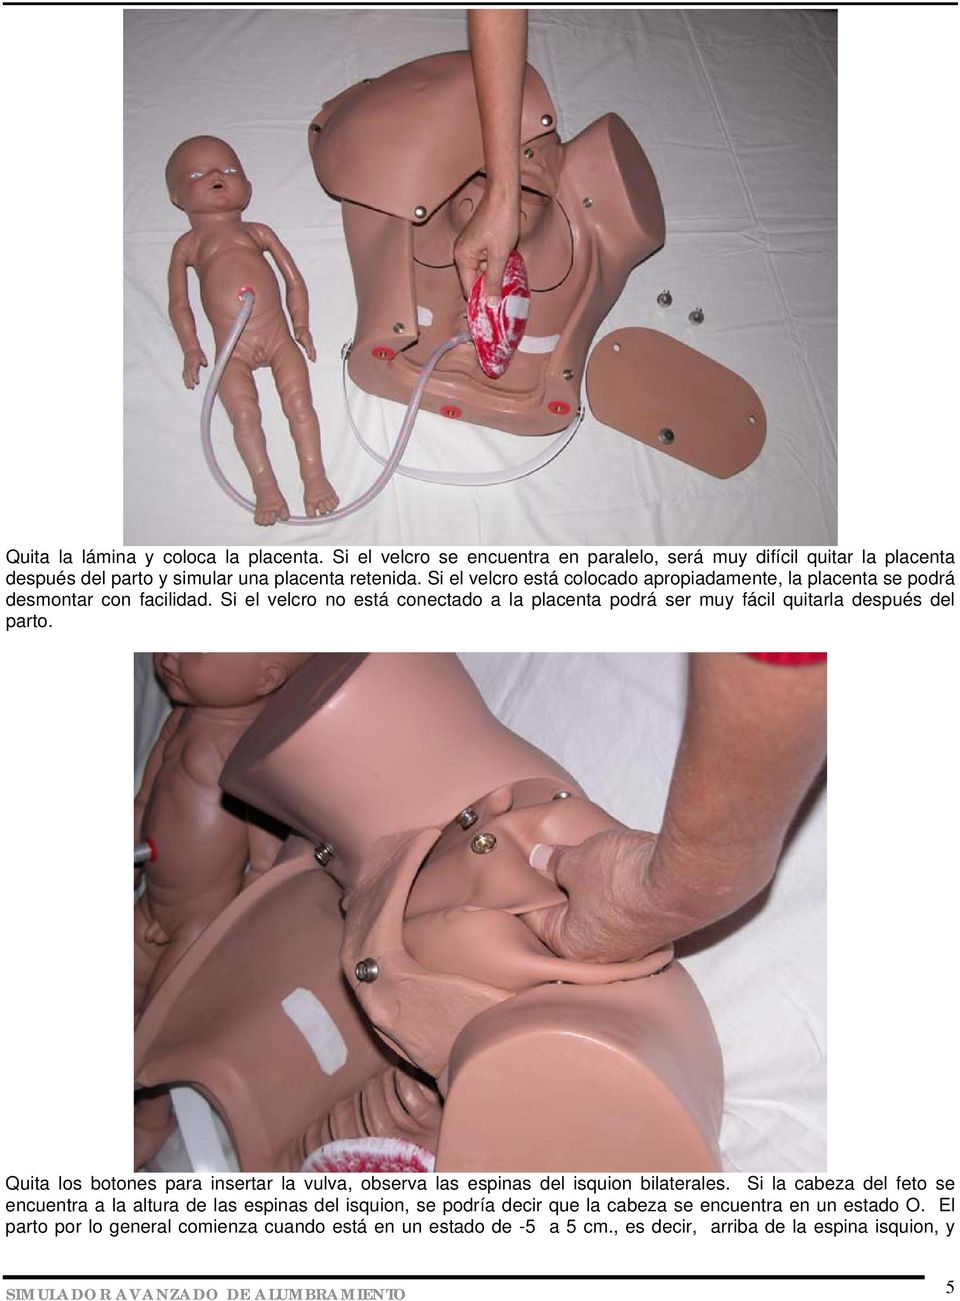 Si el velcro no está conectado a la placenta podrá ser muy fácil quitarla después del parto. Quita los botones para insertar la vulva, observa las espinas del isquion bilaterales.